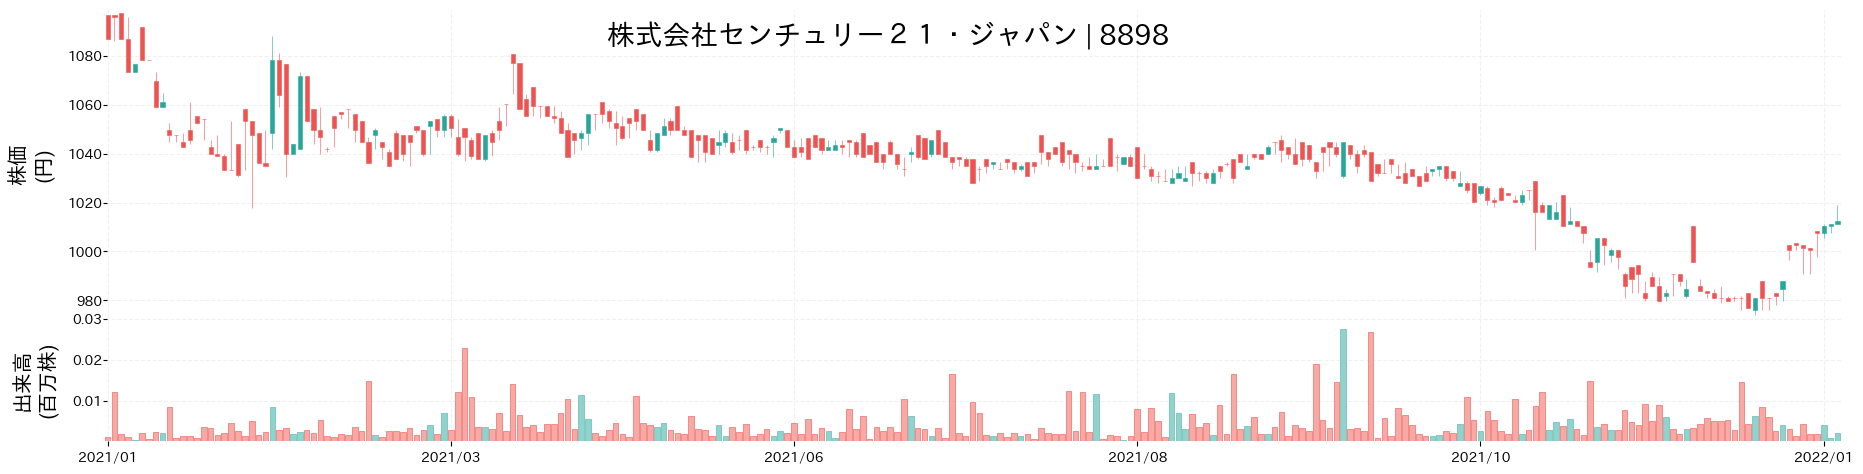 センチュリー21・ジャパンの株価推移(2021)